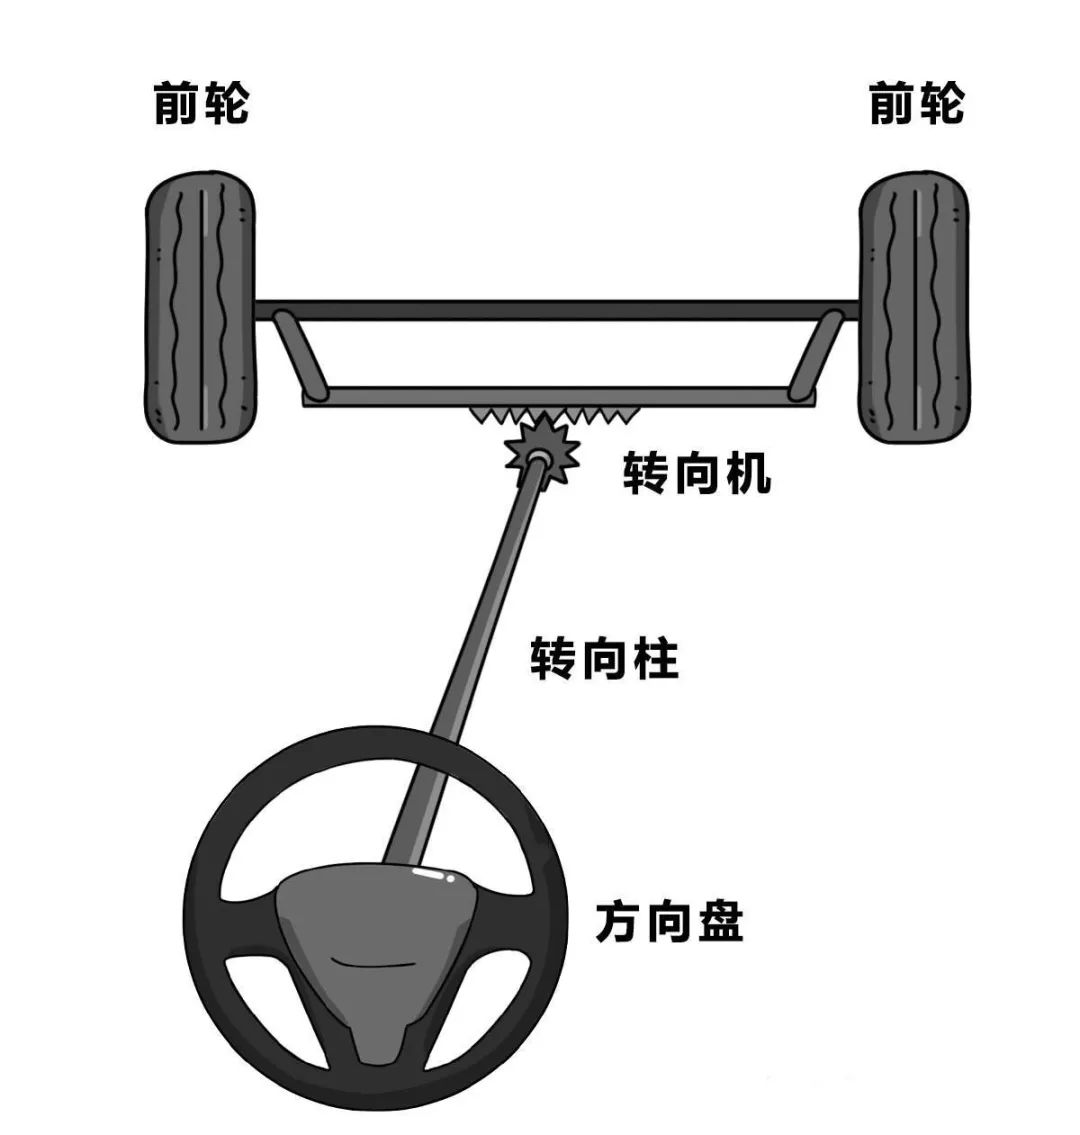 转向柱,转向机组成,驾驶员转动方向盘通过转向柱和转向机让车轮转动